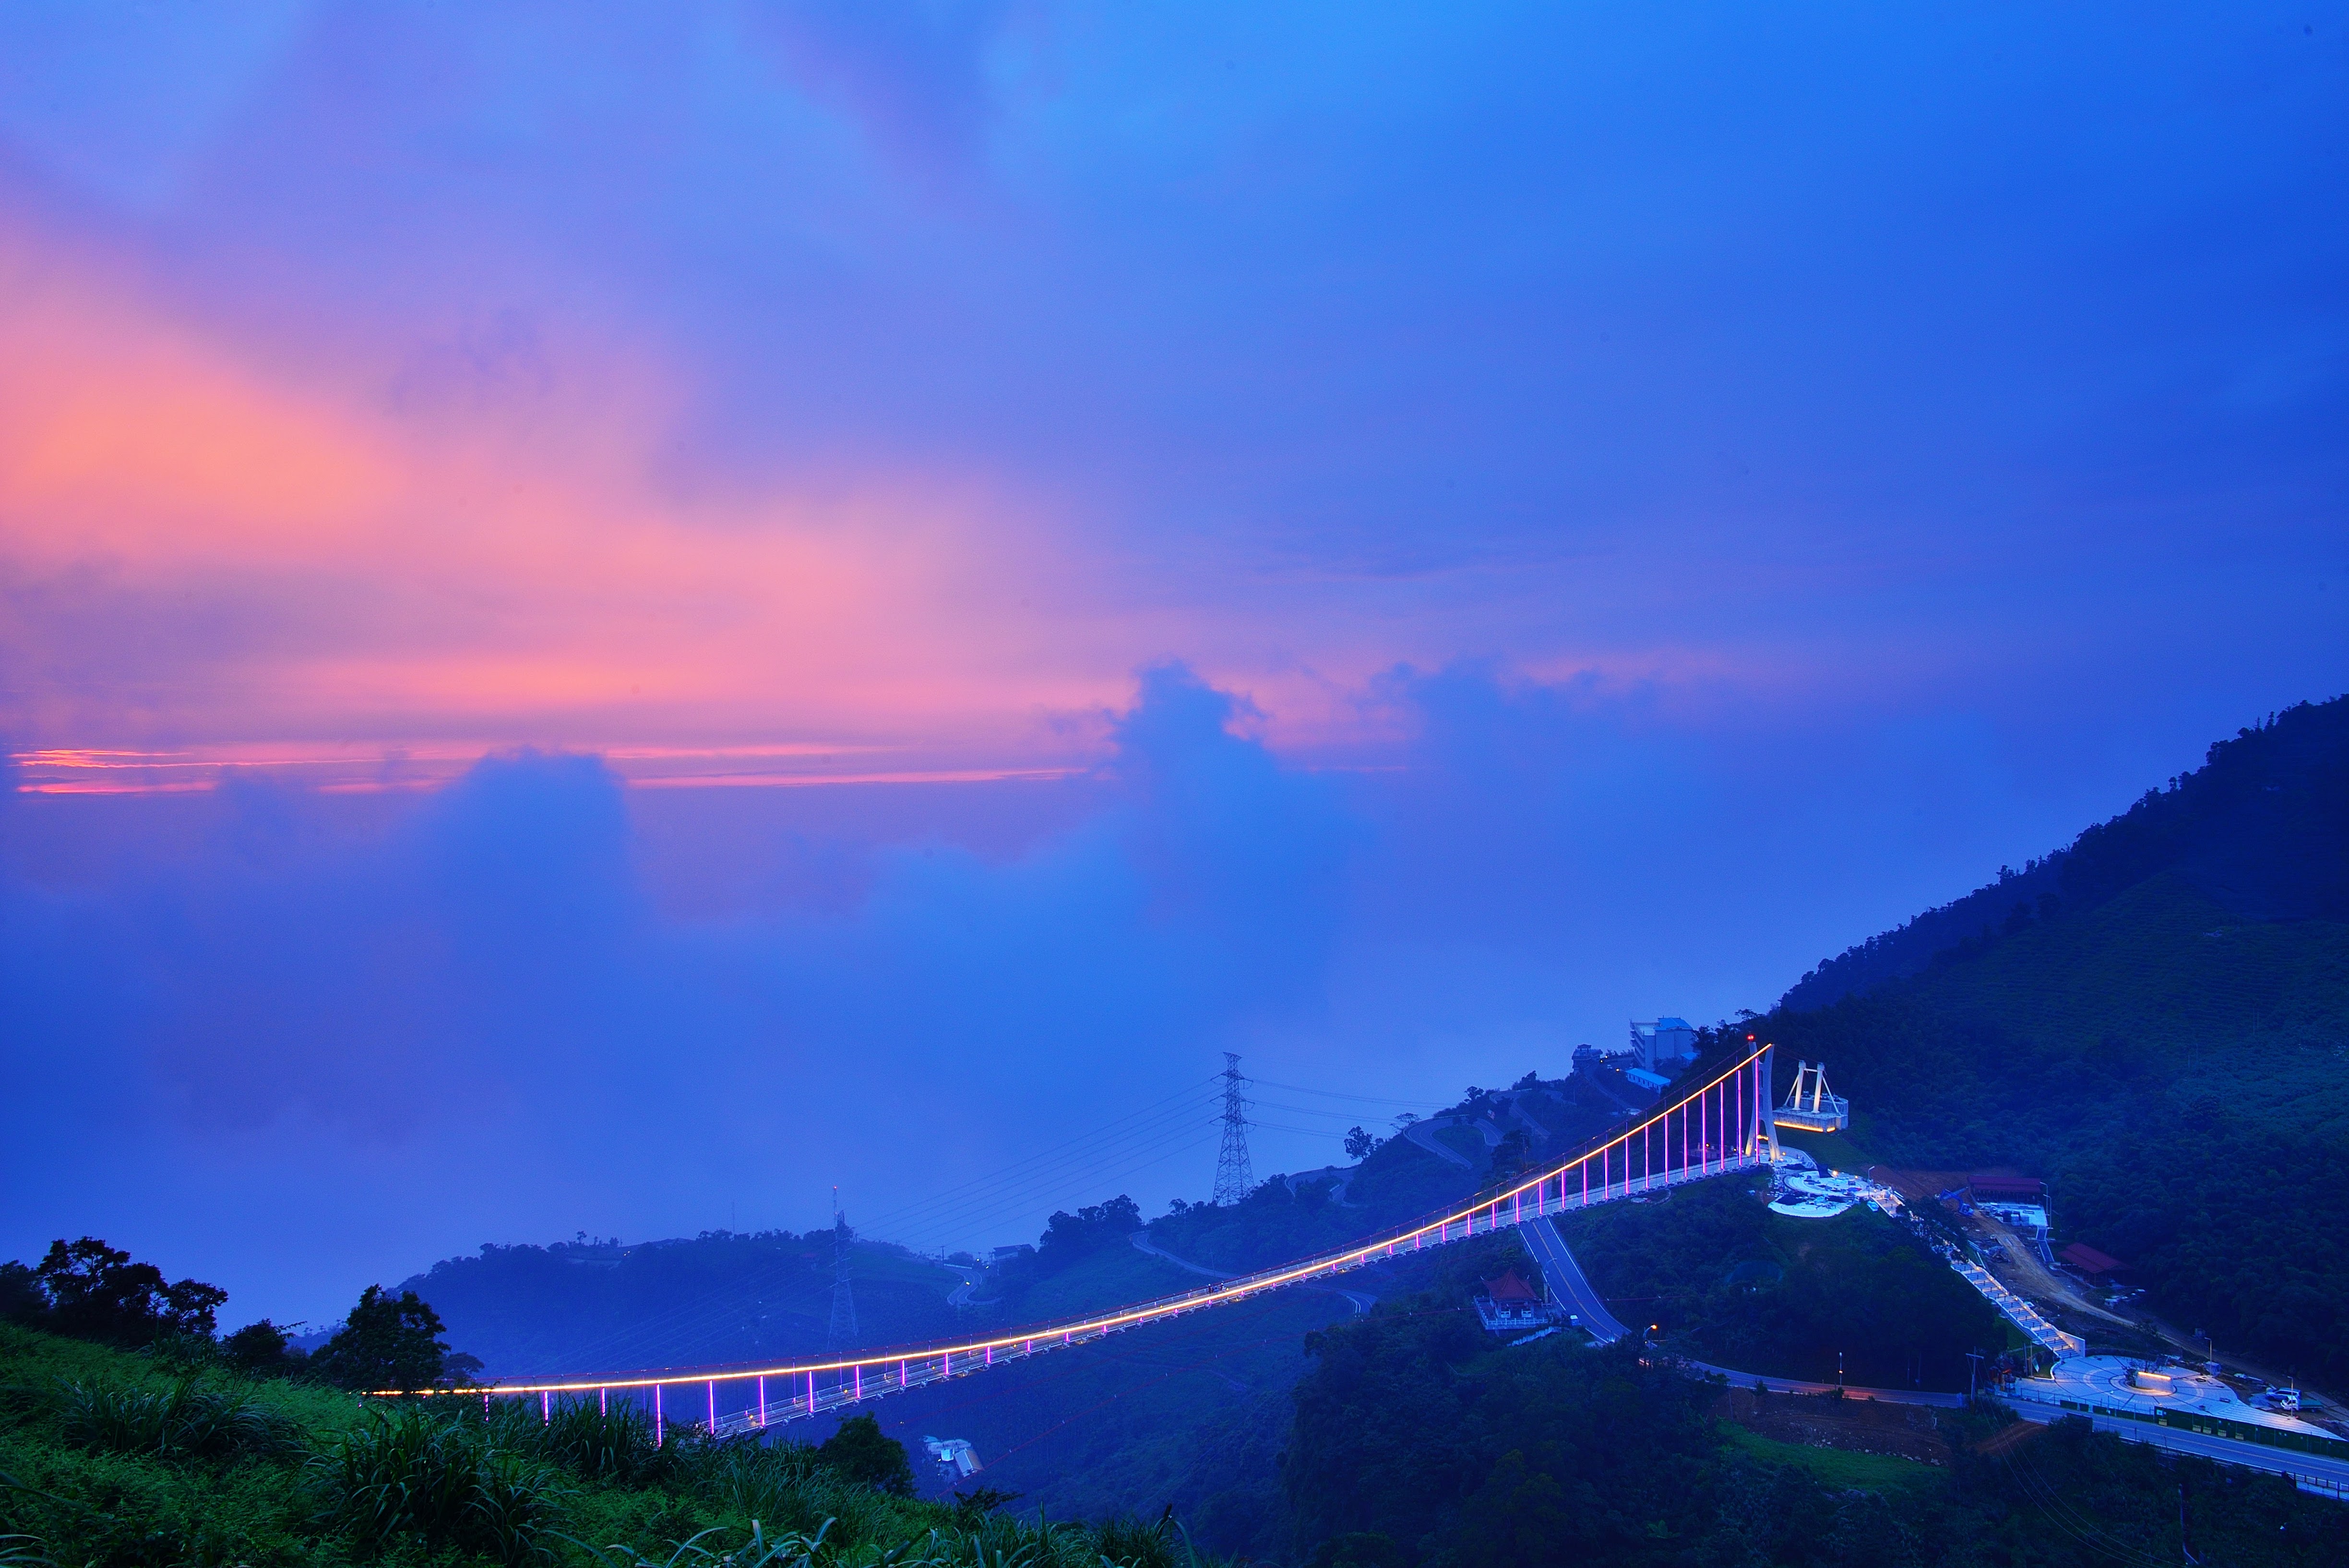 Sunset at Taiping Suspension Bridge